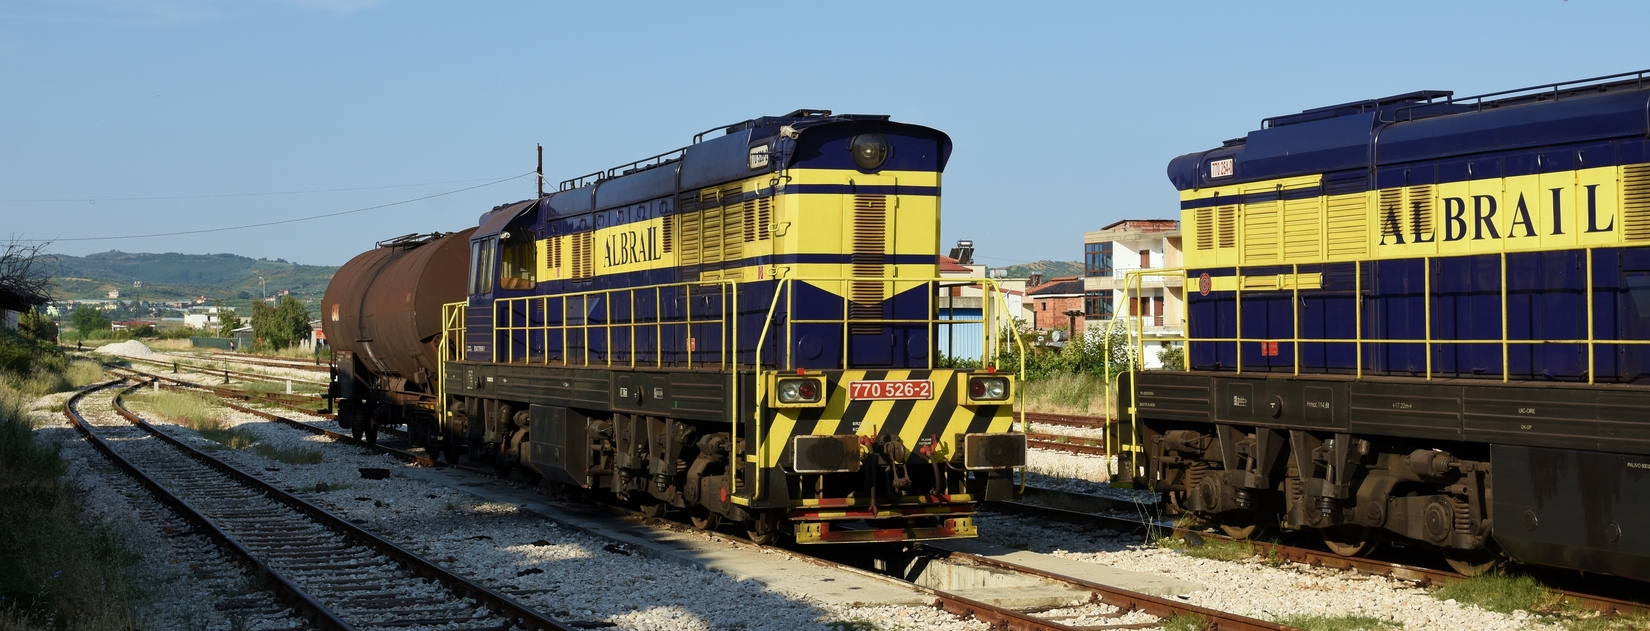 ALBRAIL – die Hoffnung in der Albanischen Eisenbahnwelt?